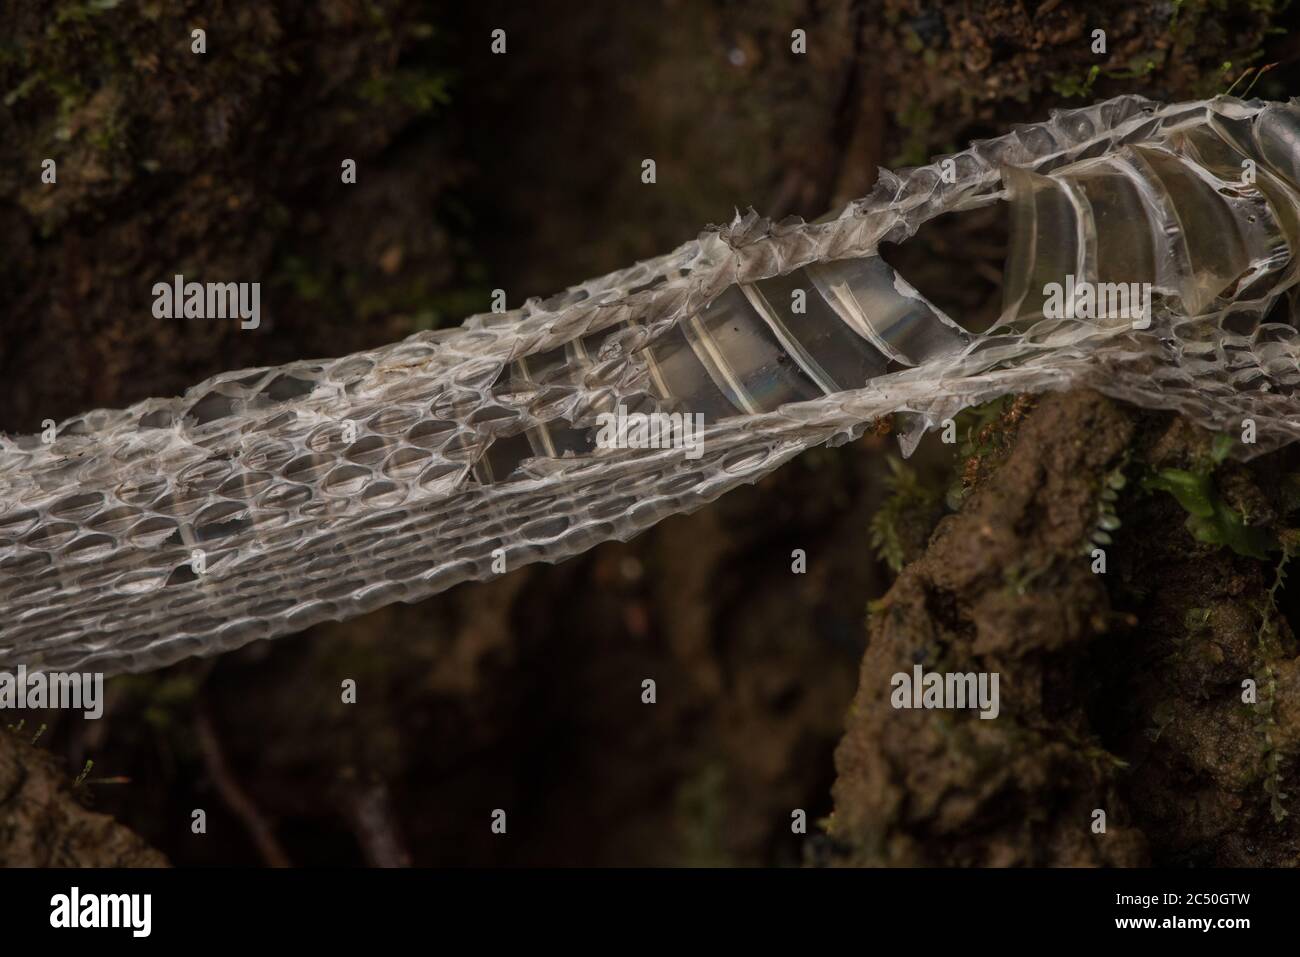 Eine Schuppen Schlangenhaut auf dem Waldboden im ecuadorianischen Amazonas Regenwald. Stockfoto